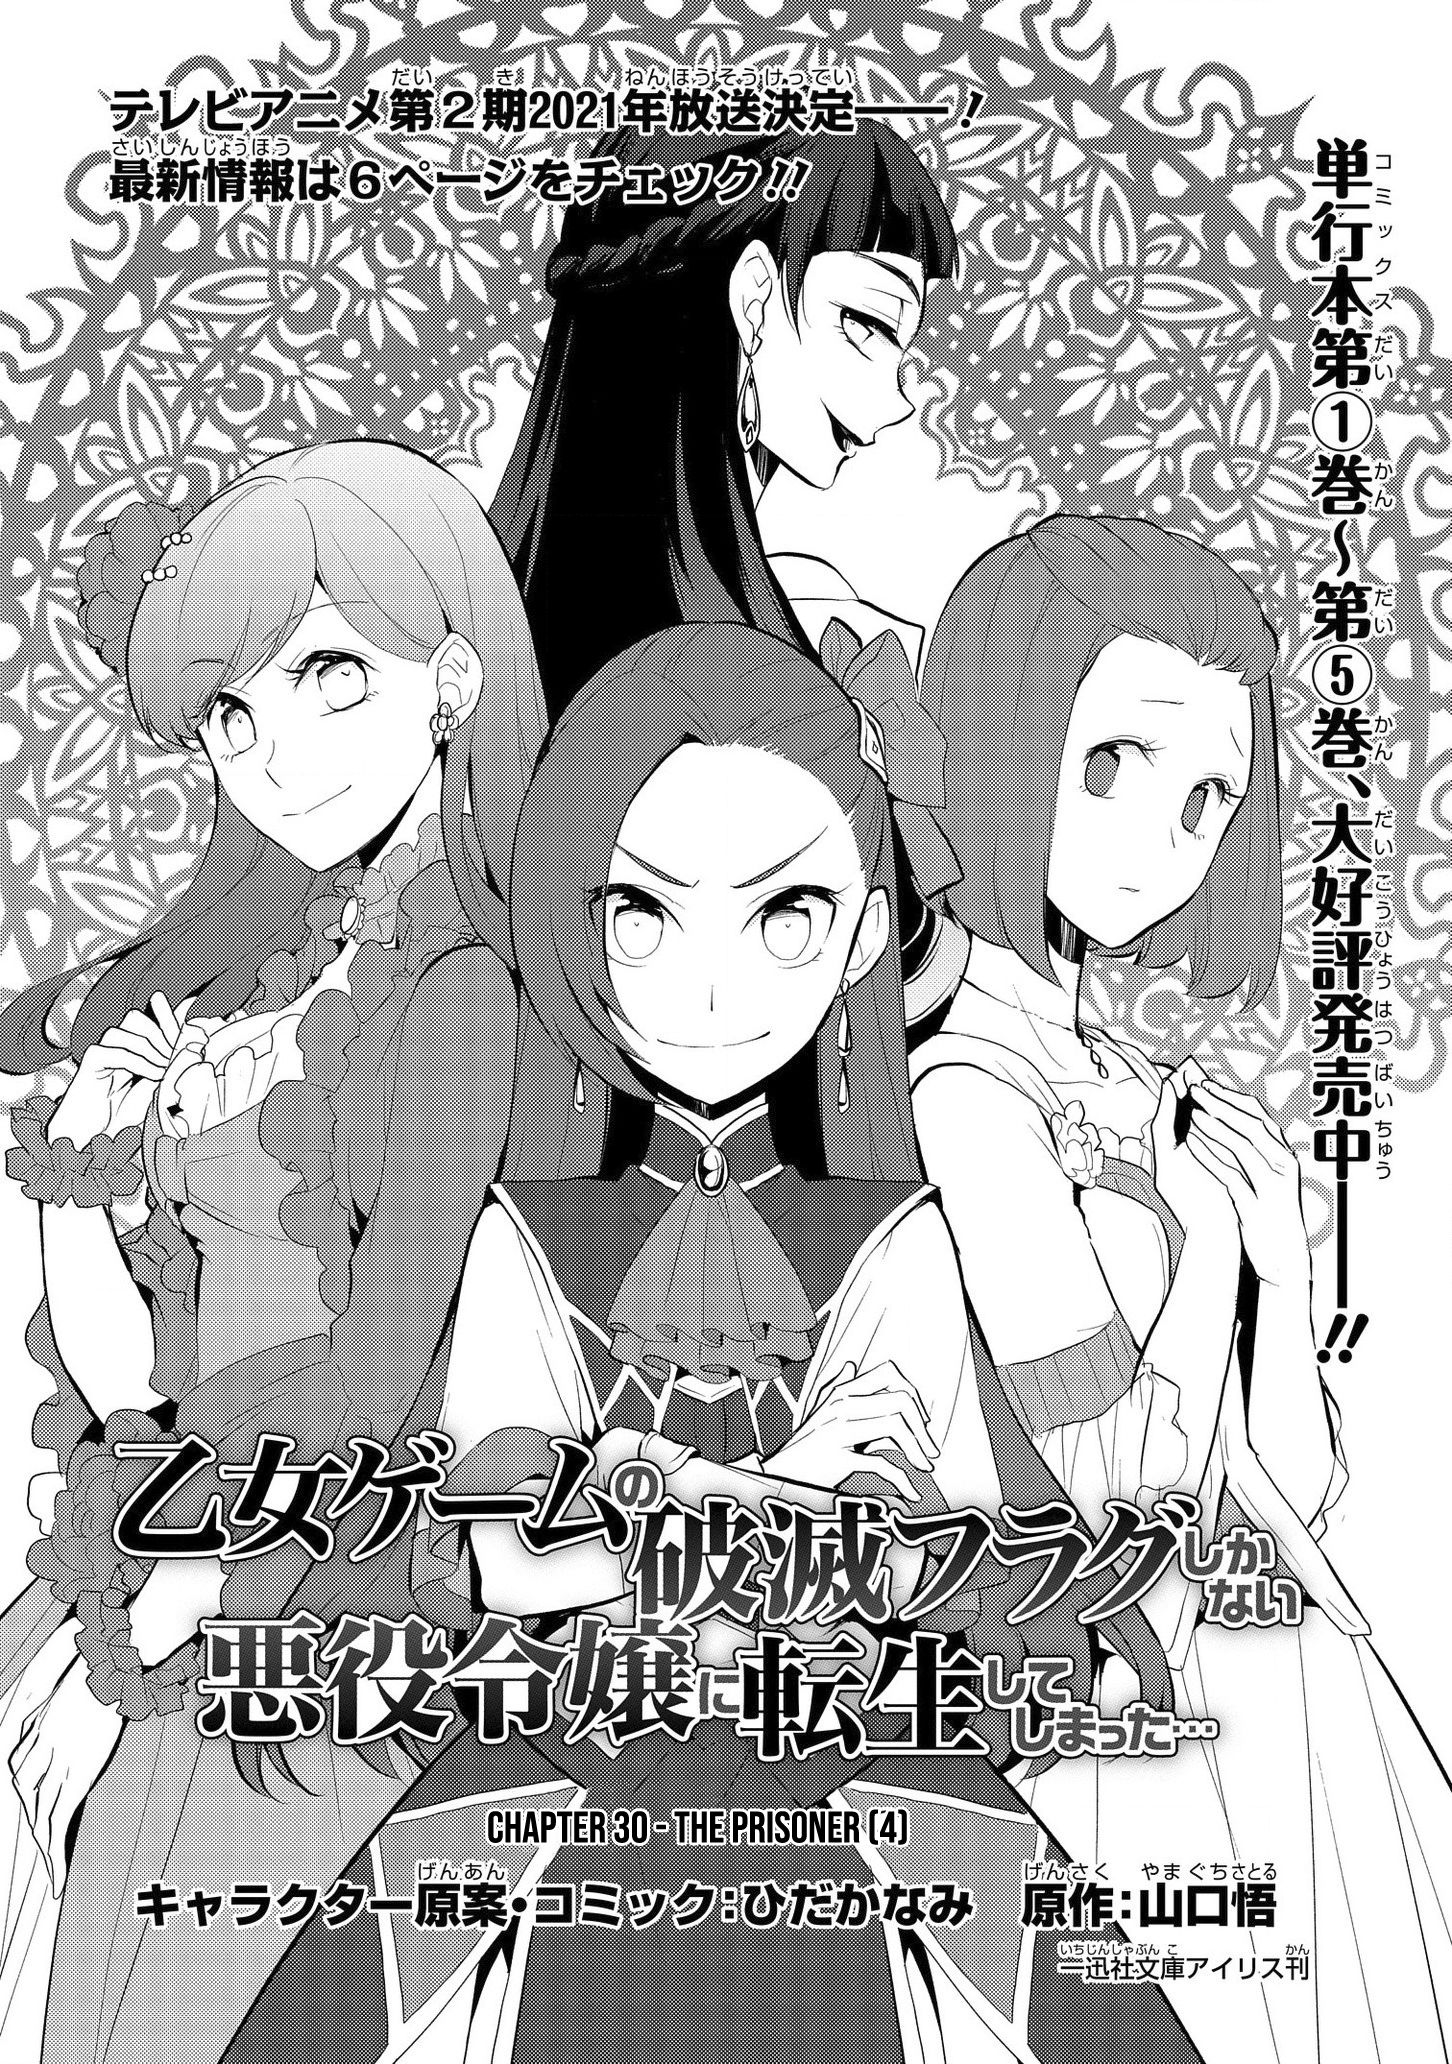 Read Otome Game no Hametsu Flag Shika Nai Akuyaku Reijou ni Tensei Shite  Shimatta Manga English [New Chapters] Online Free - MangaClash